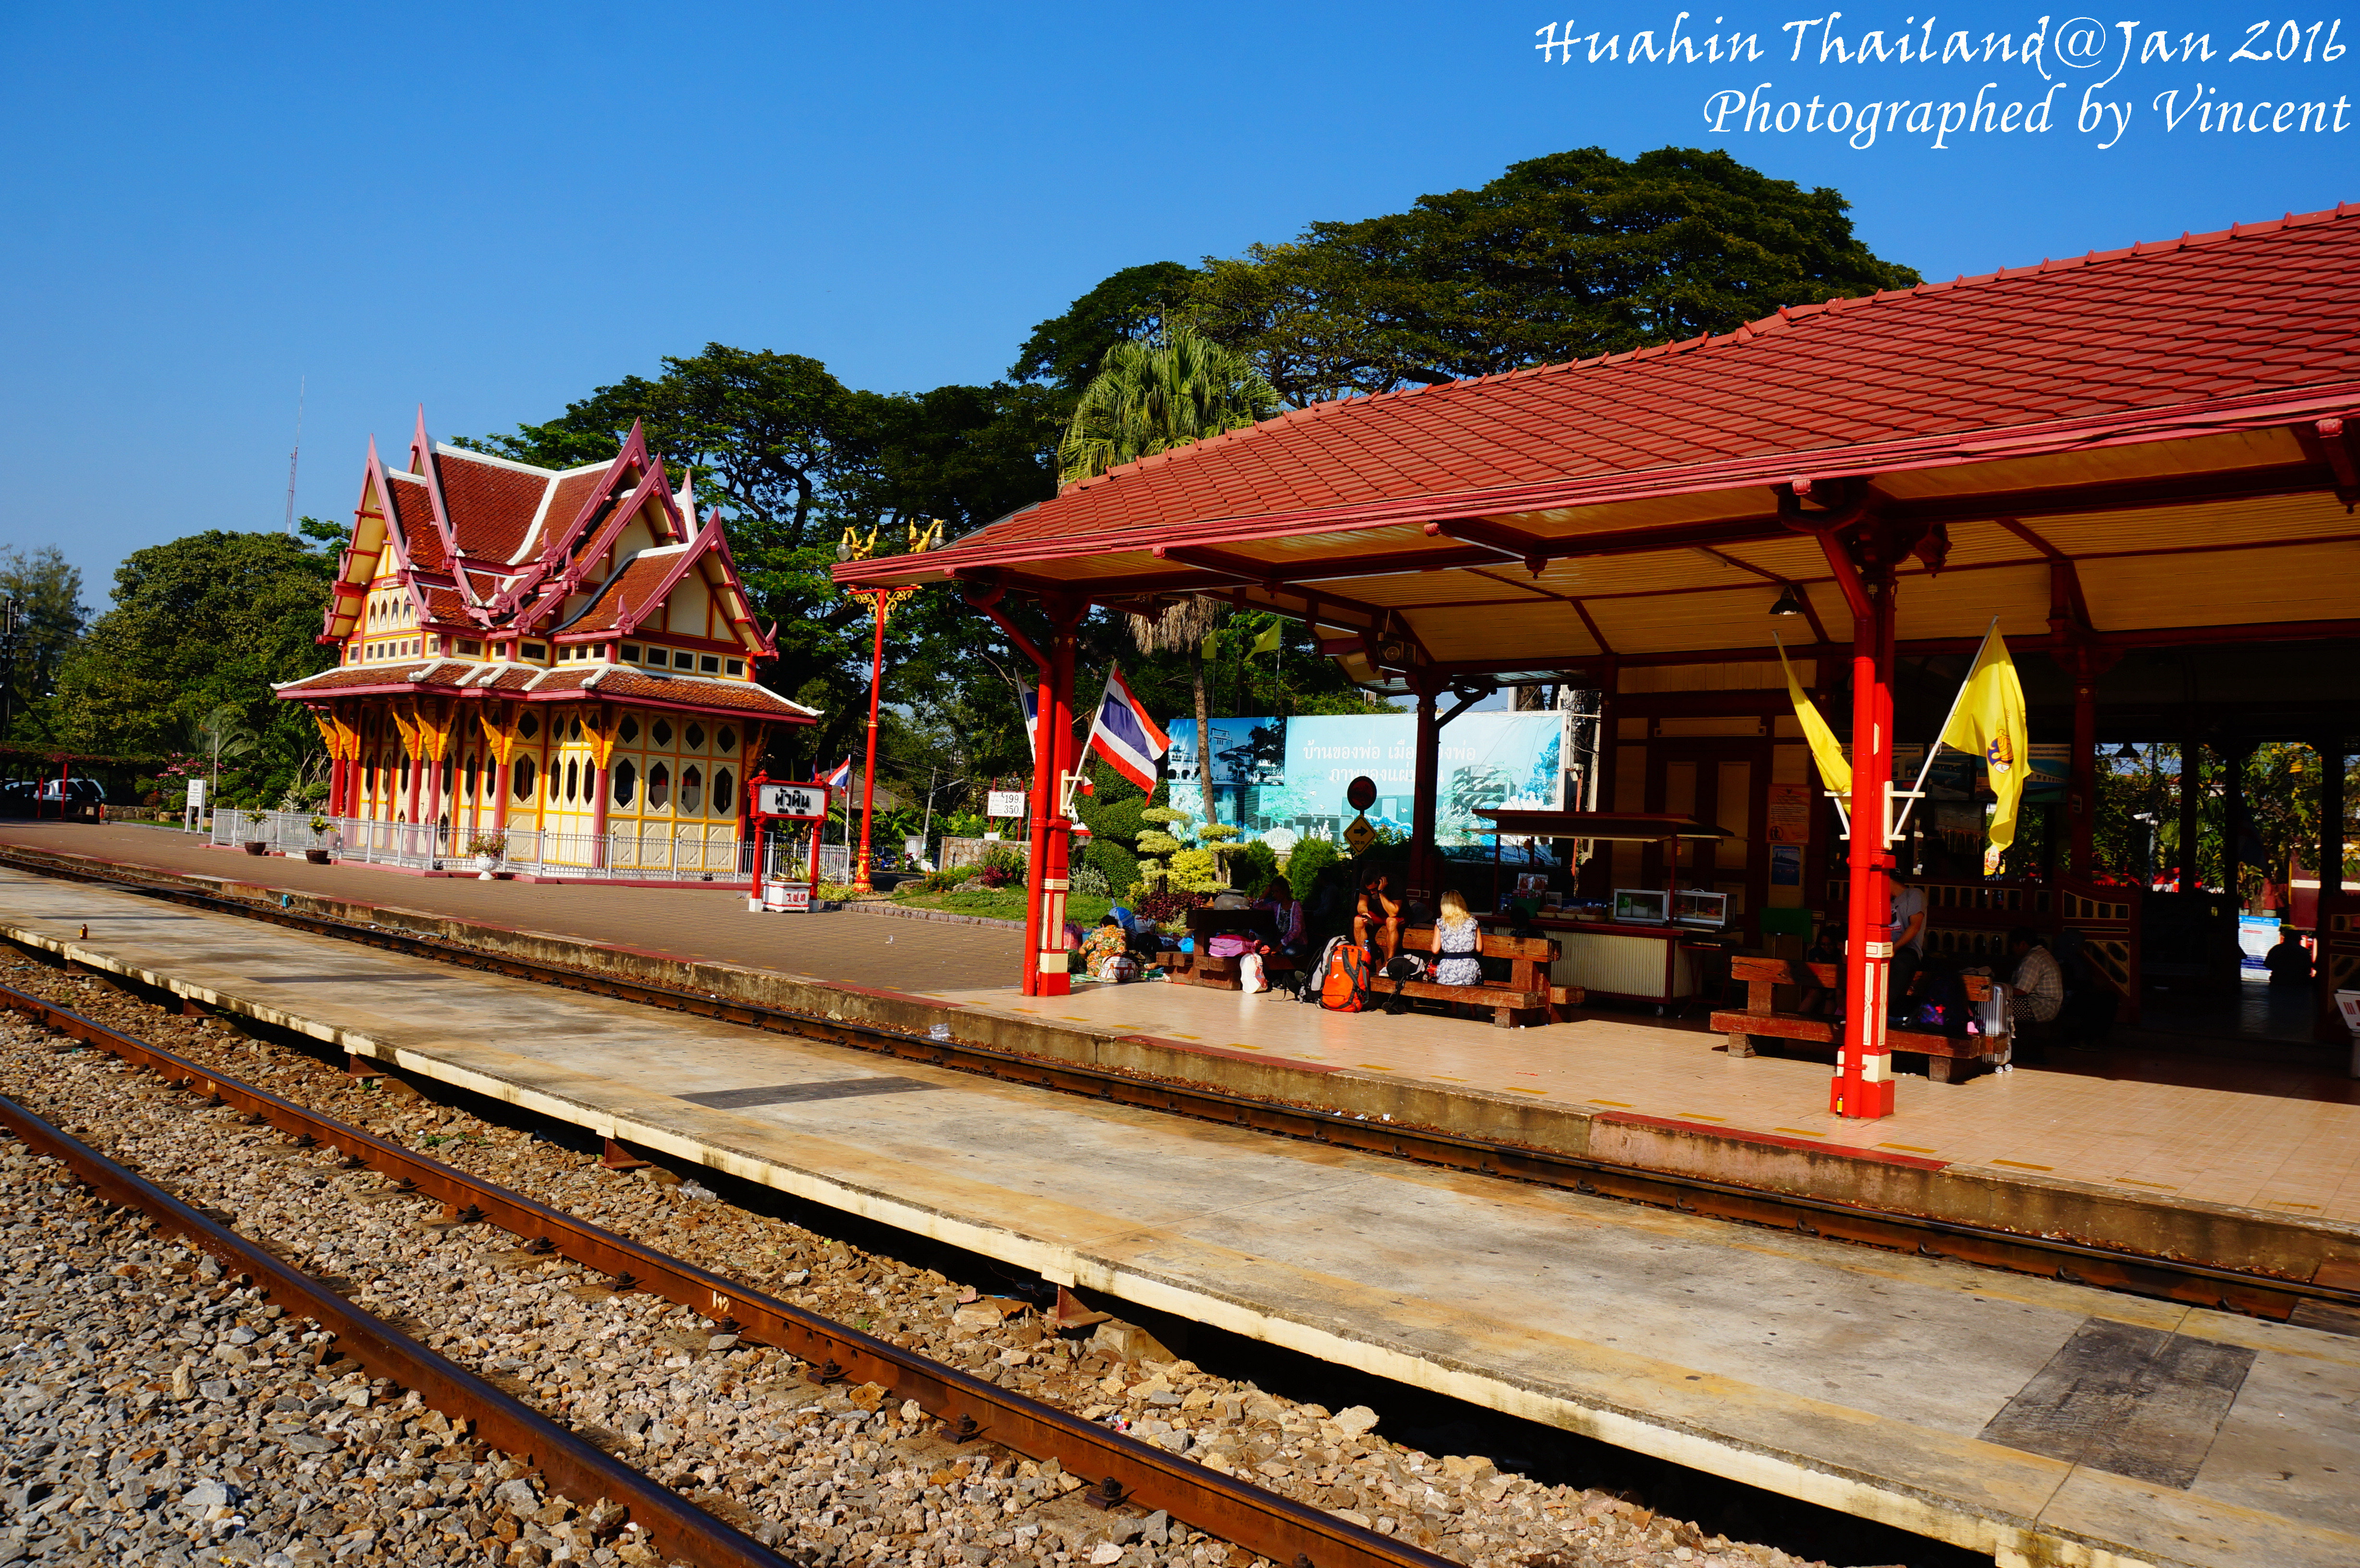 【携程攻略】华欣华欣火车站景点,华欣火车站是泰国最老的火车站之一